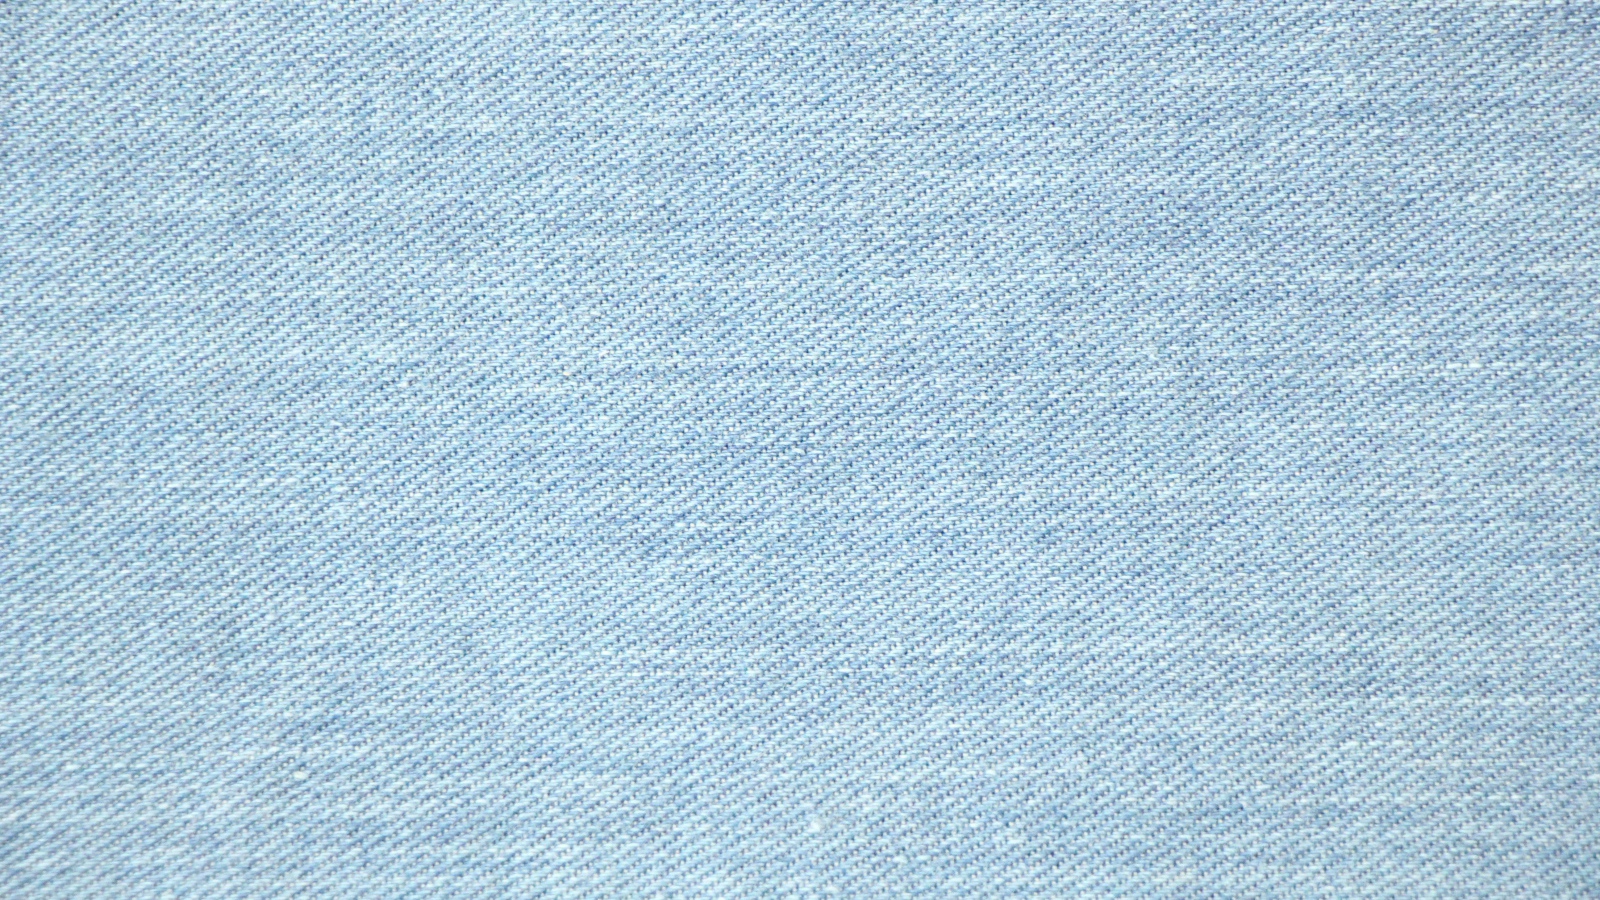 Голубая джинсовая ткань, фон 